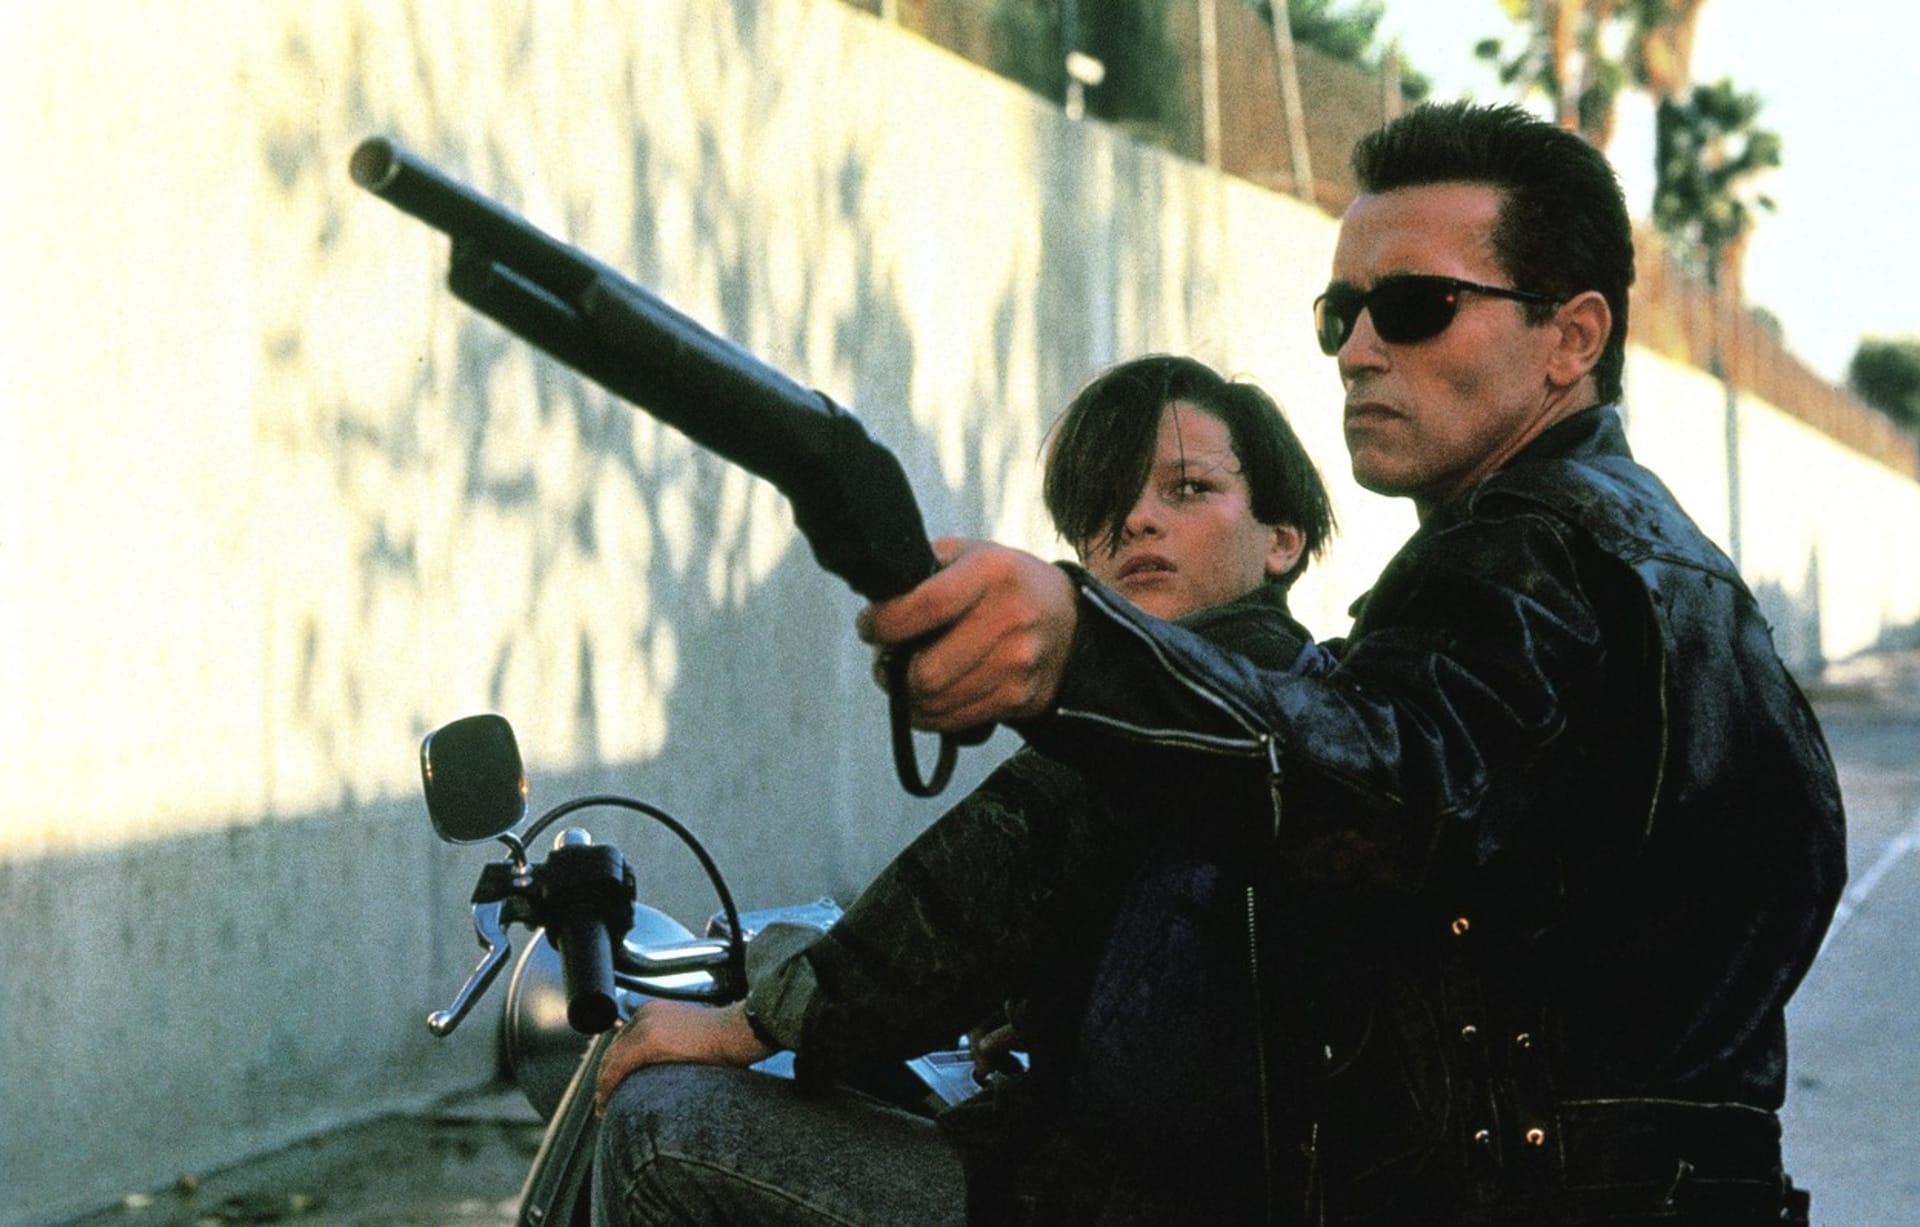 Terminátor 2: Den zúčtování. Arnold Schwarzenegger v jedné ze svých nejslavnějších rolí vůbec. Zde zachraňuje Johna Connora v podání herce Edwarda Furlonga před útokem terminátora T-1000.